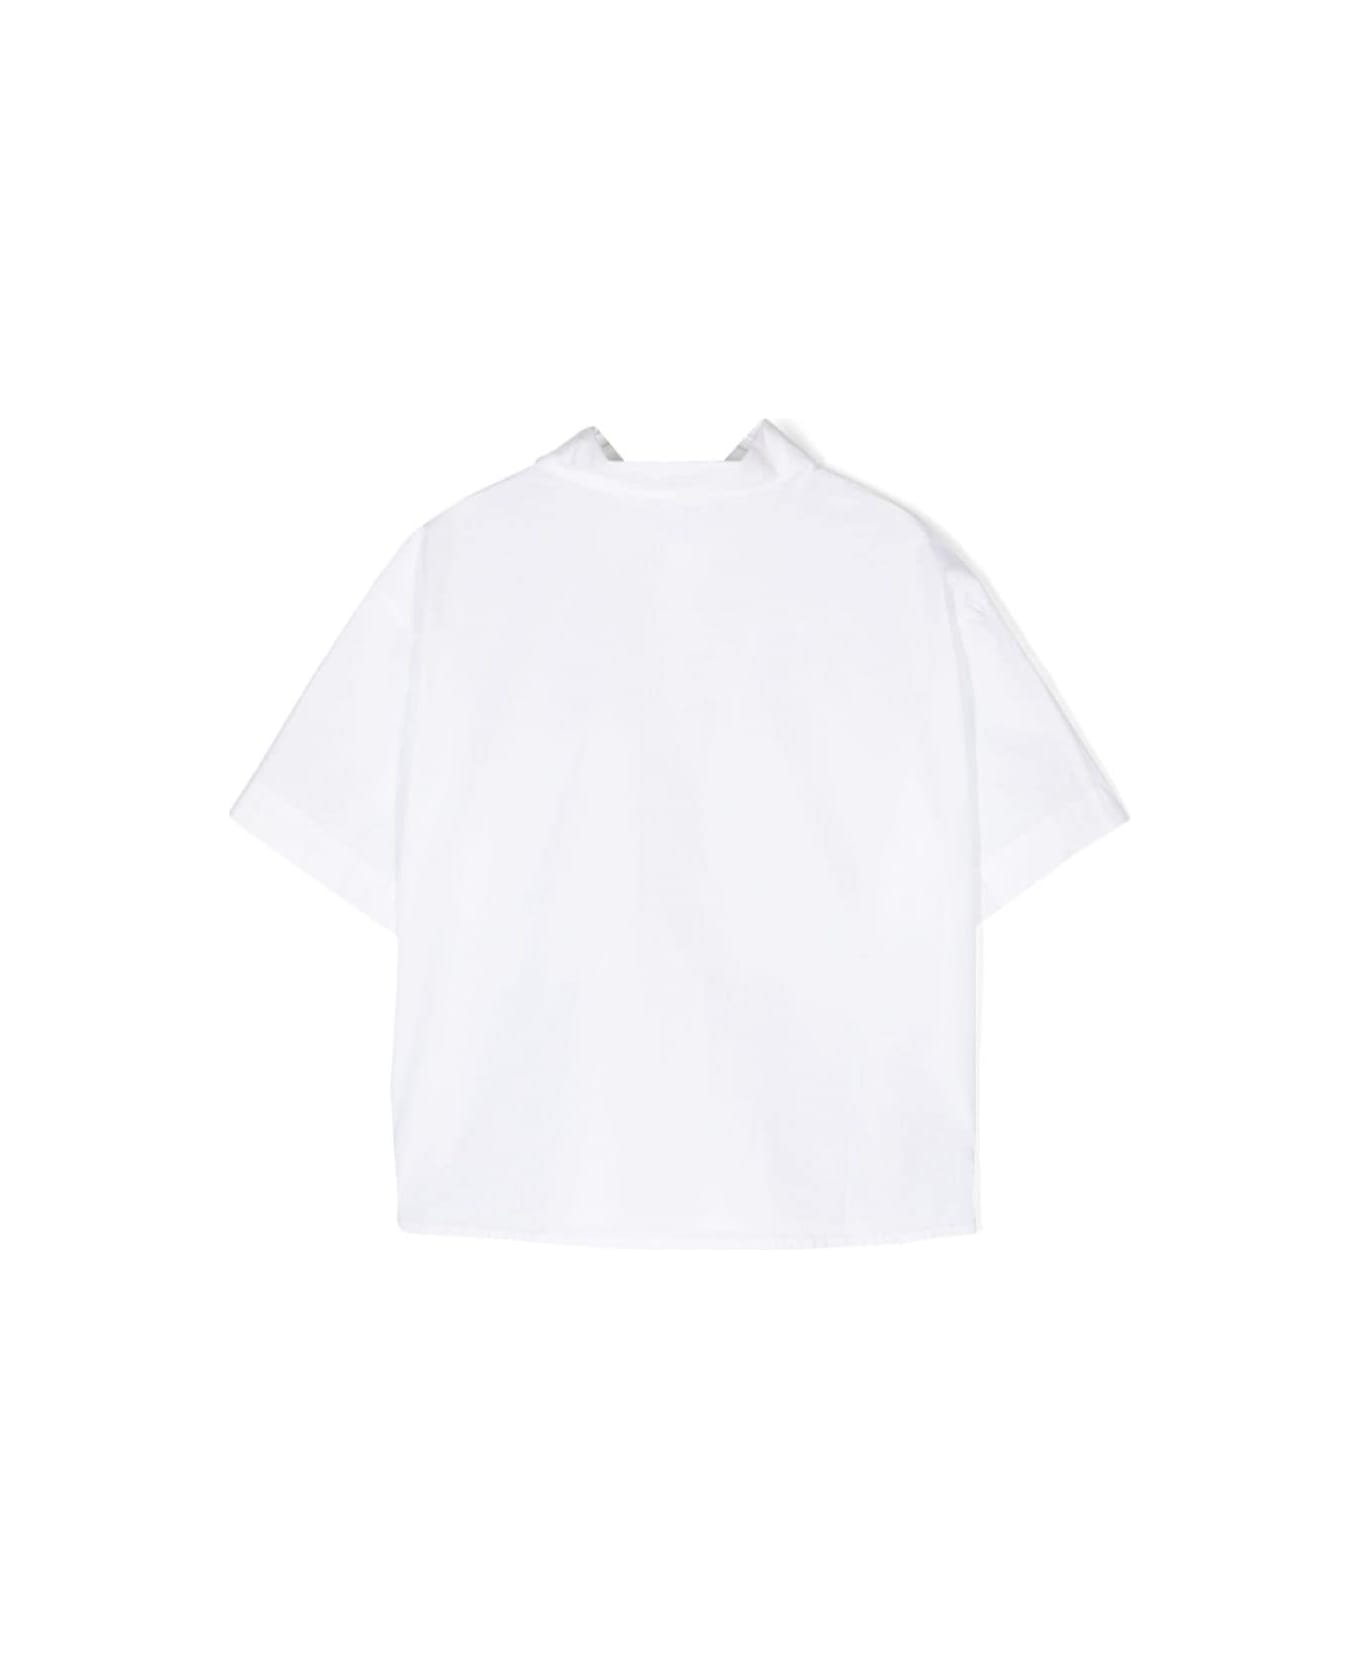 Aspesi Shirt With Logo - White